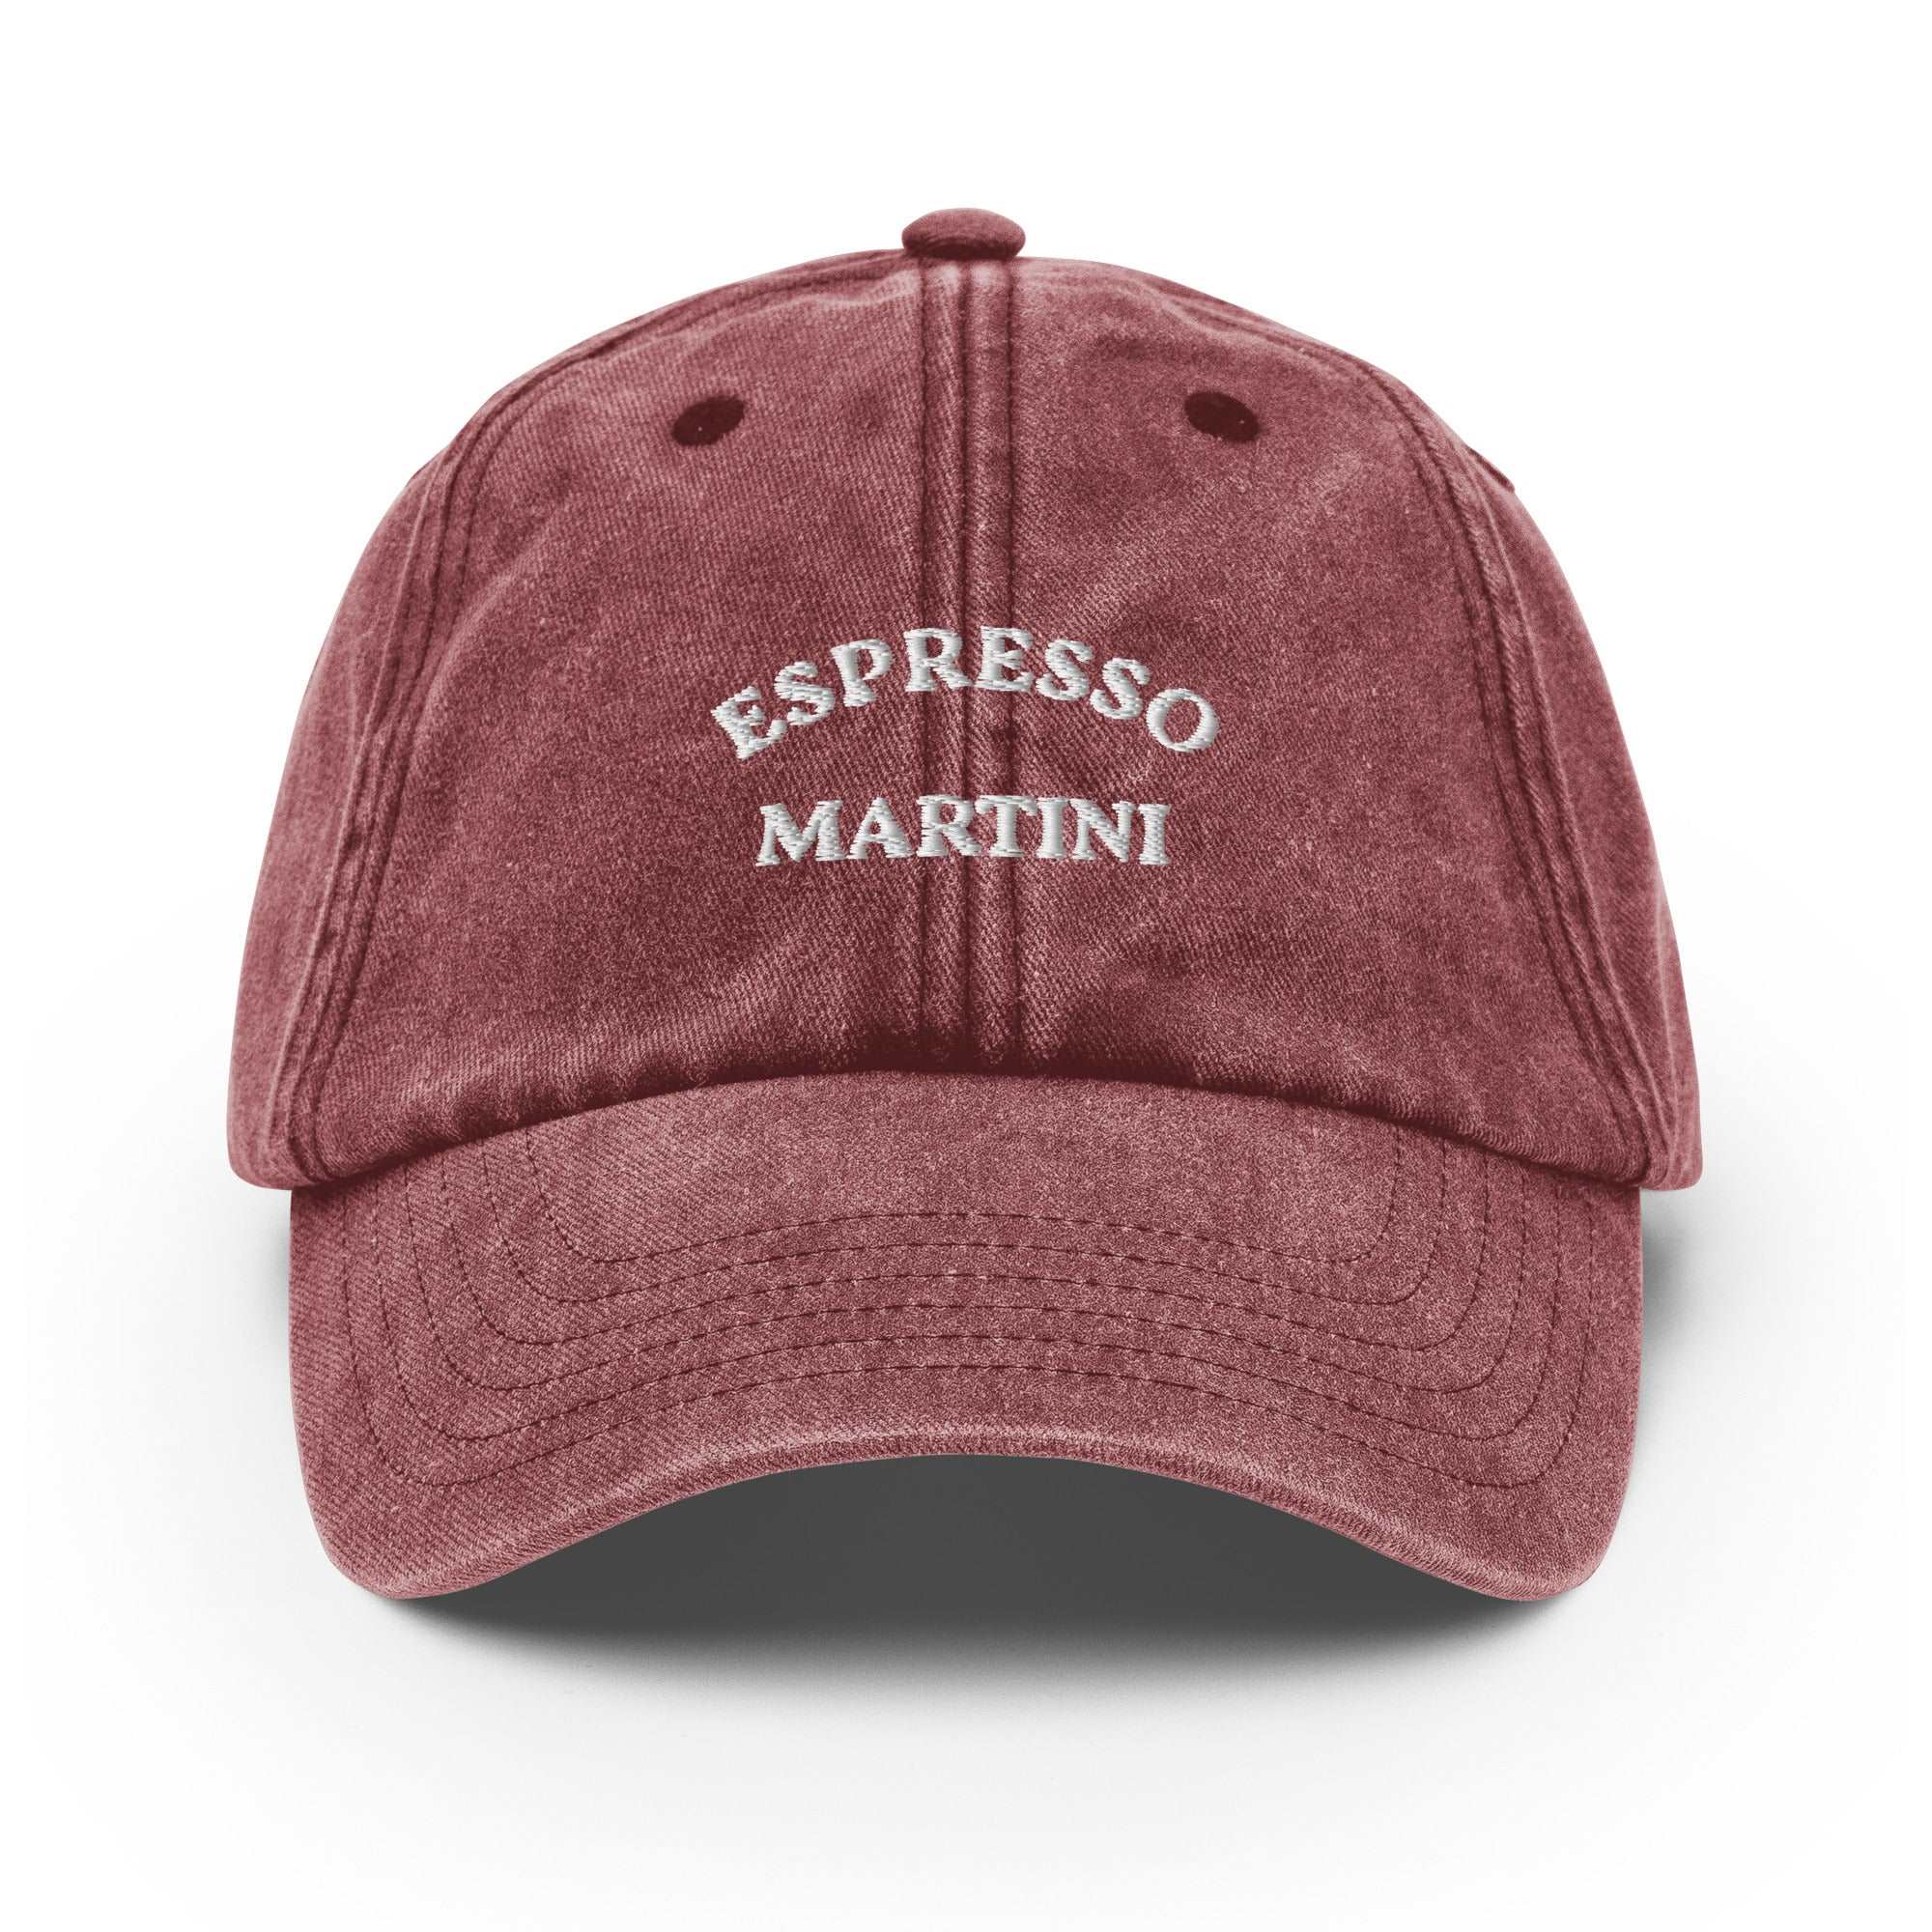 Espresso Martini Vintage Cap - The Refined Spirit